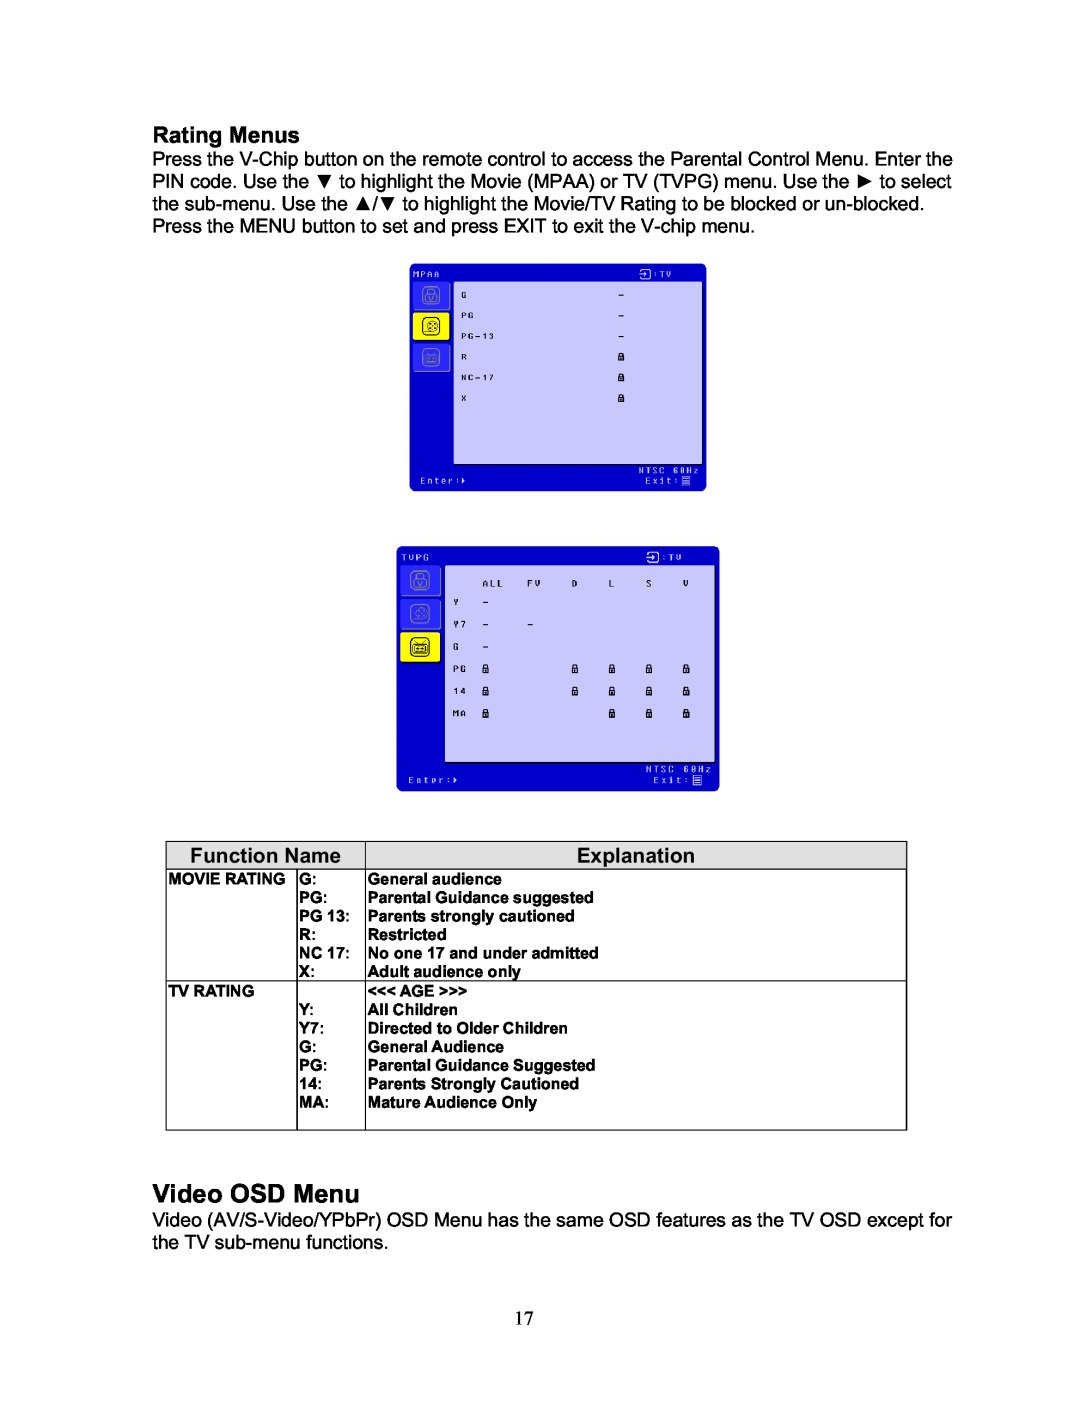 Sharp LTV-19w3 manual Video OSD Menu, Rating Menus 